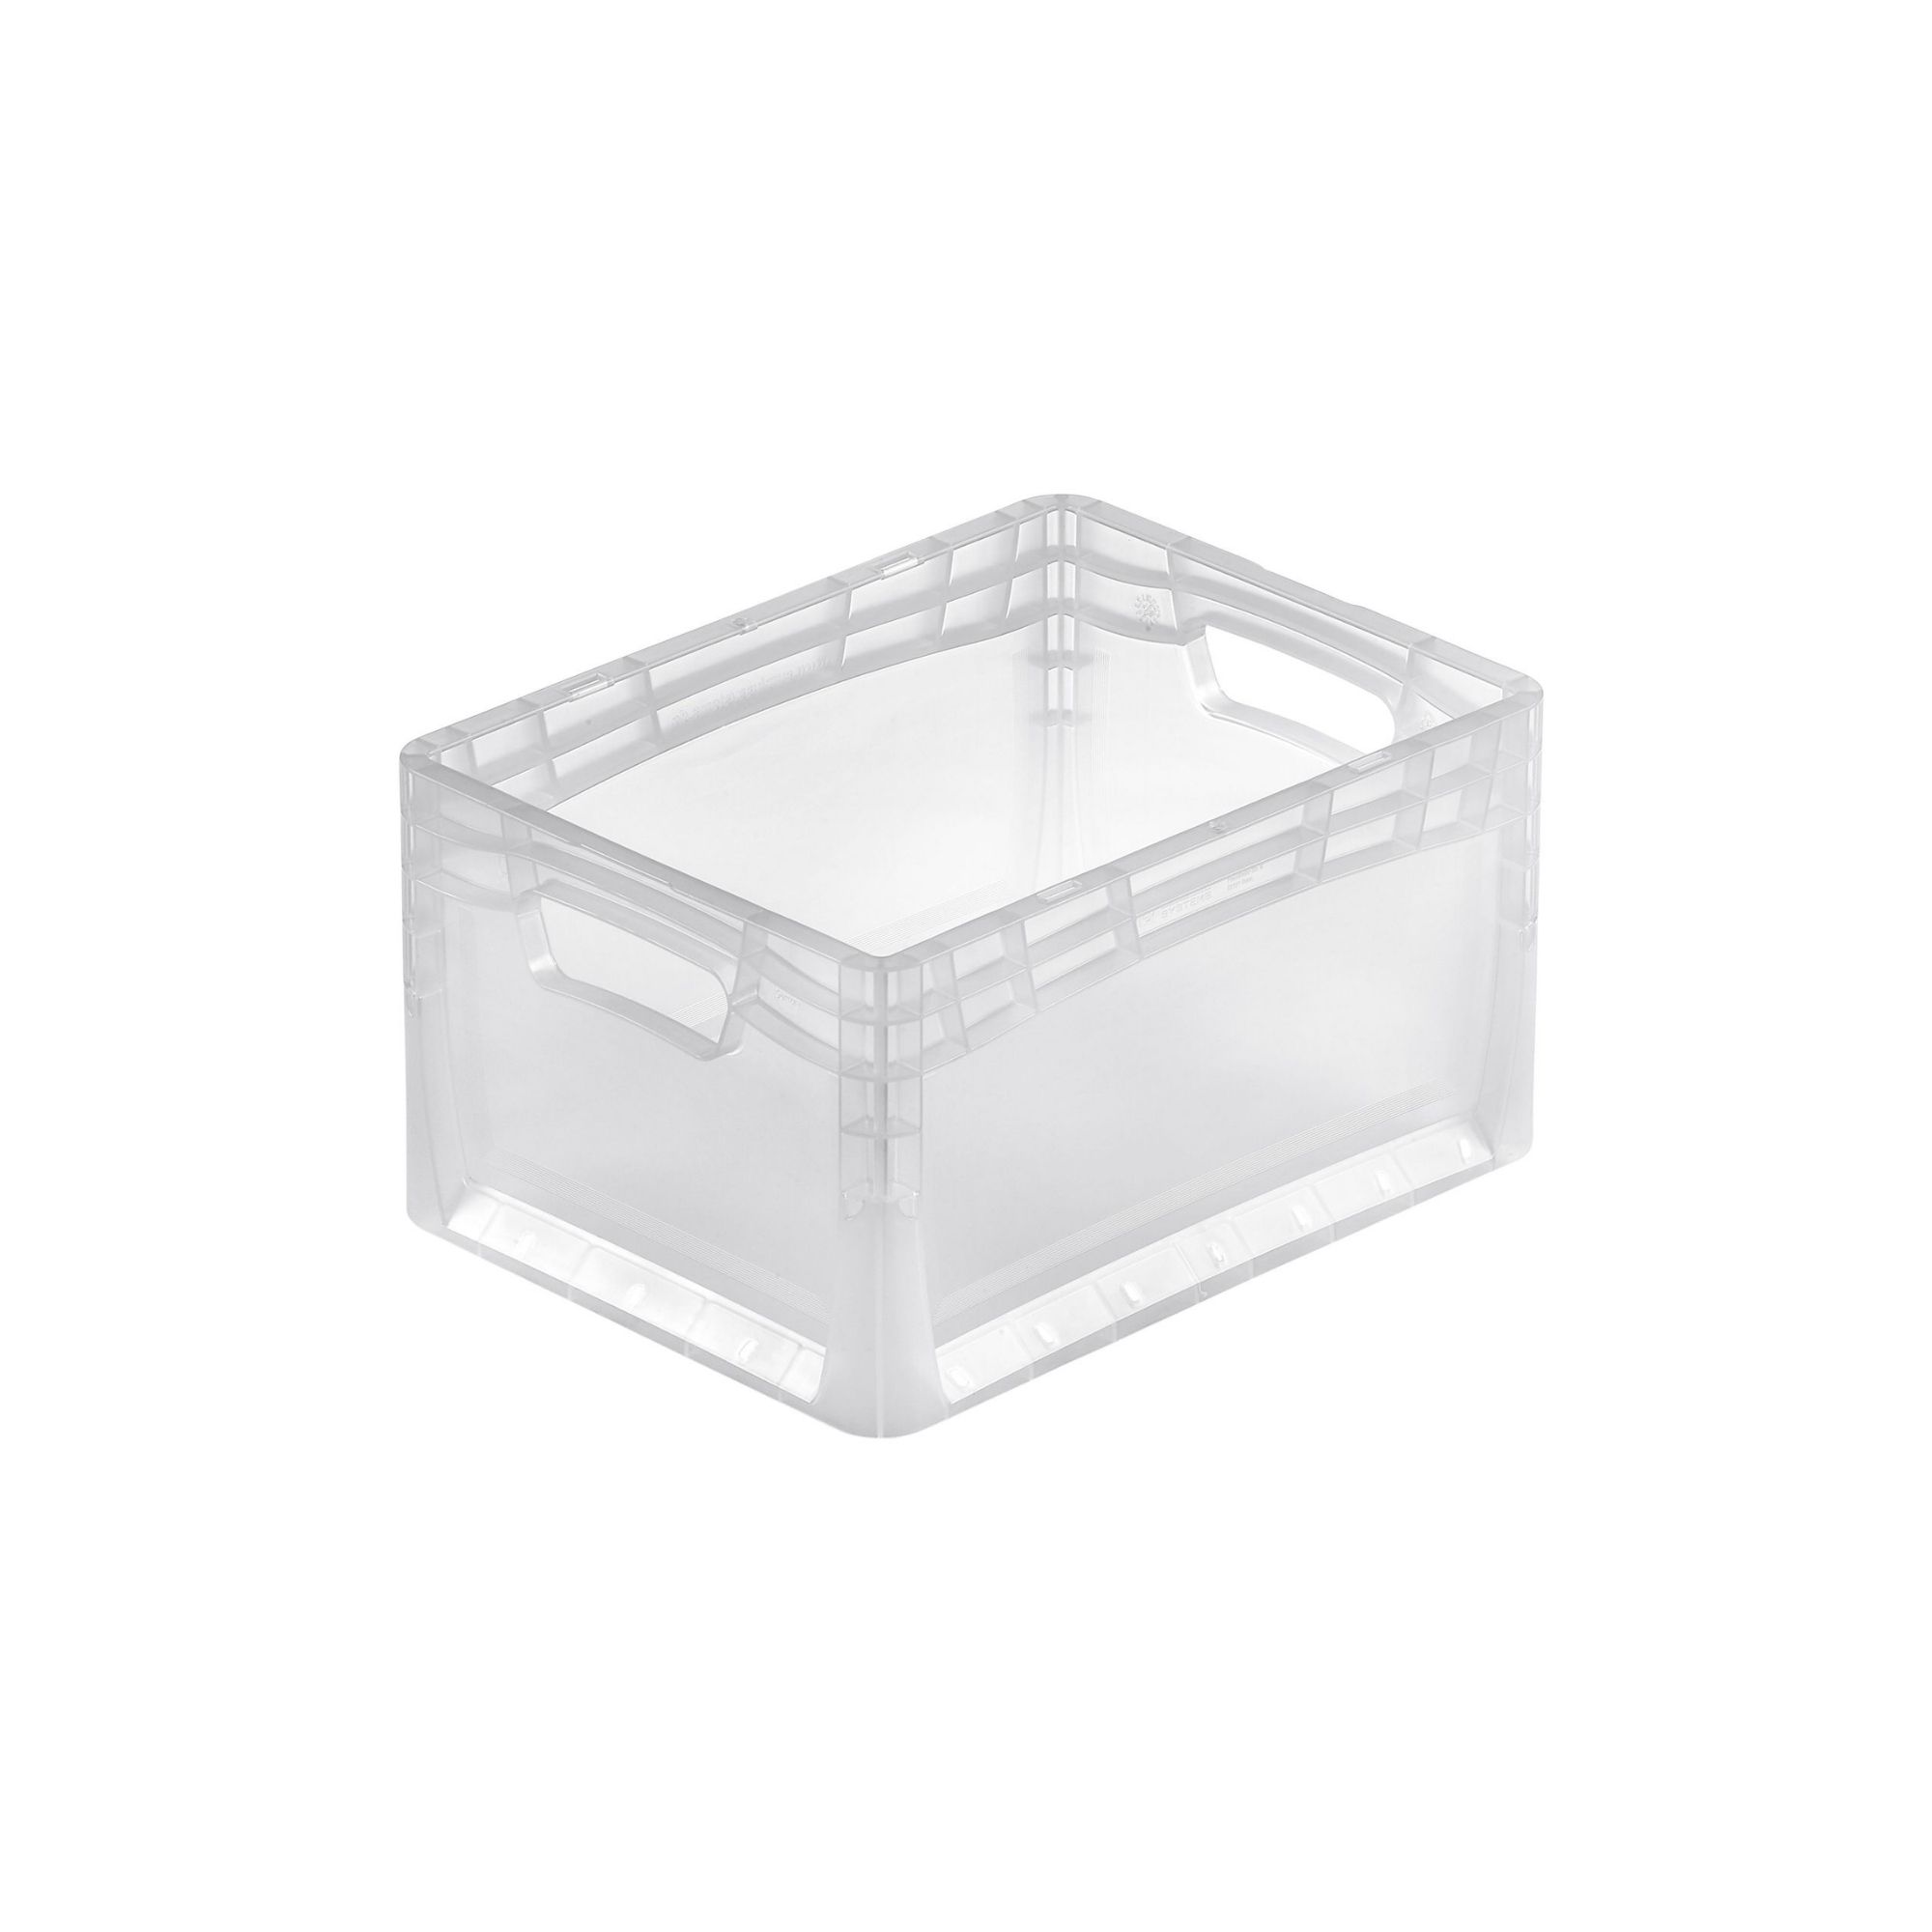 Transparenter Eurobehälter LightLine mit offenem Griff | HxBxT 22x30x40cm | 24 Liter | Eurobox, Transportbox, Transportbehälter, Stapelbehälter